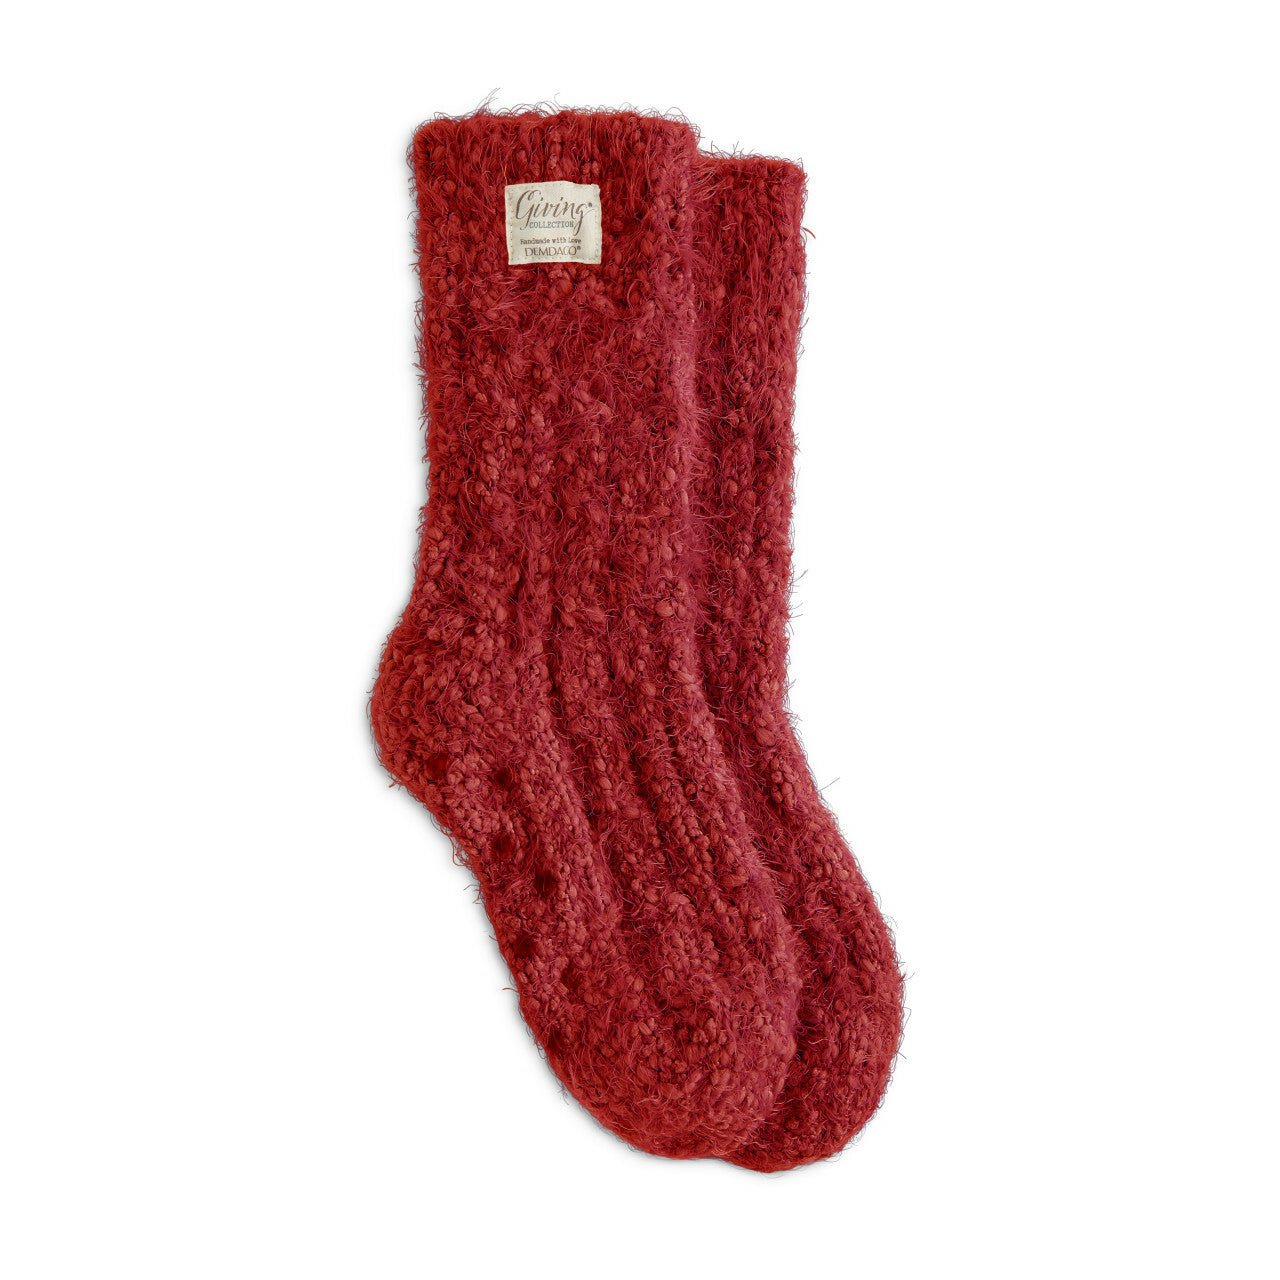 Red Women's Giving Socks